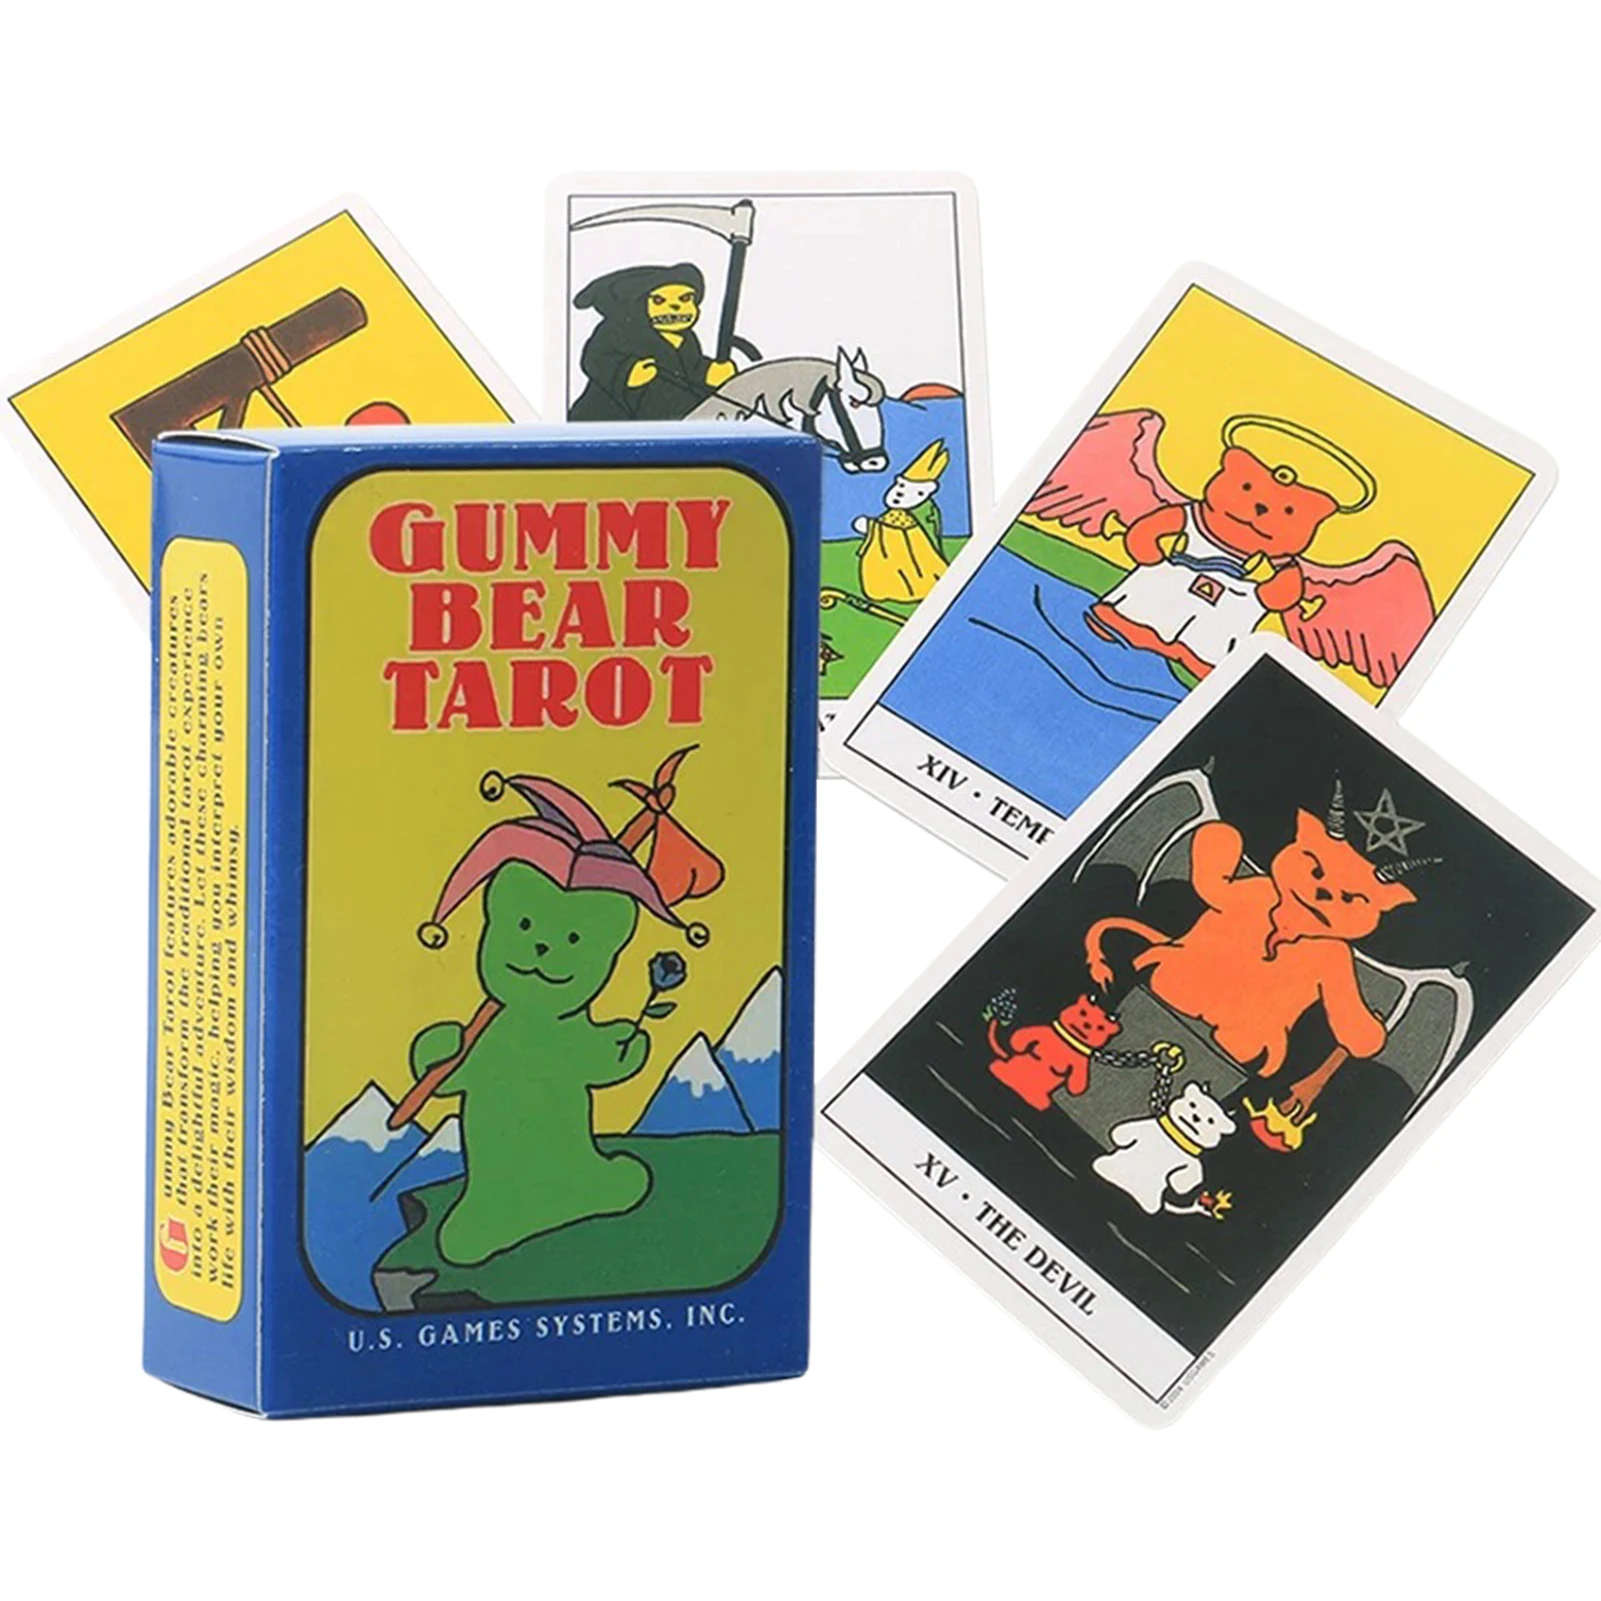 

Tarot Gummy Bear Tarot карты для ТАРО террас карточка для гадания Таро Досуг искусственная настольная игра для взрослых игральные карты